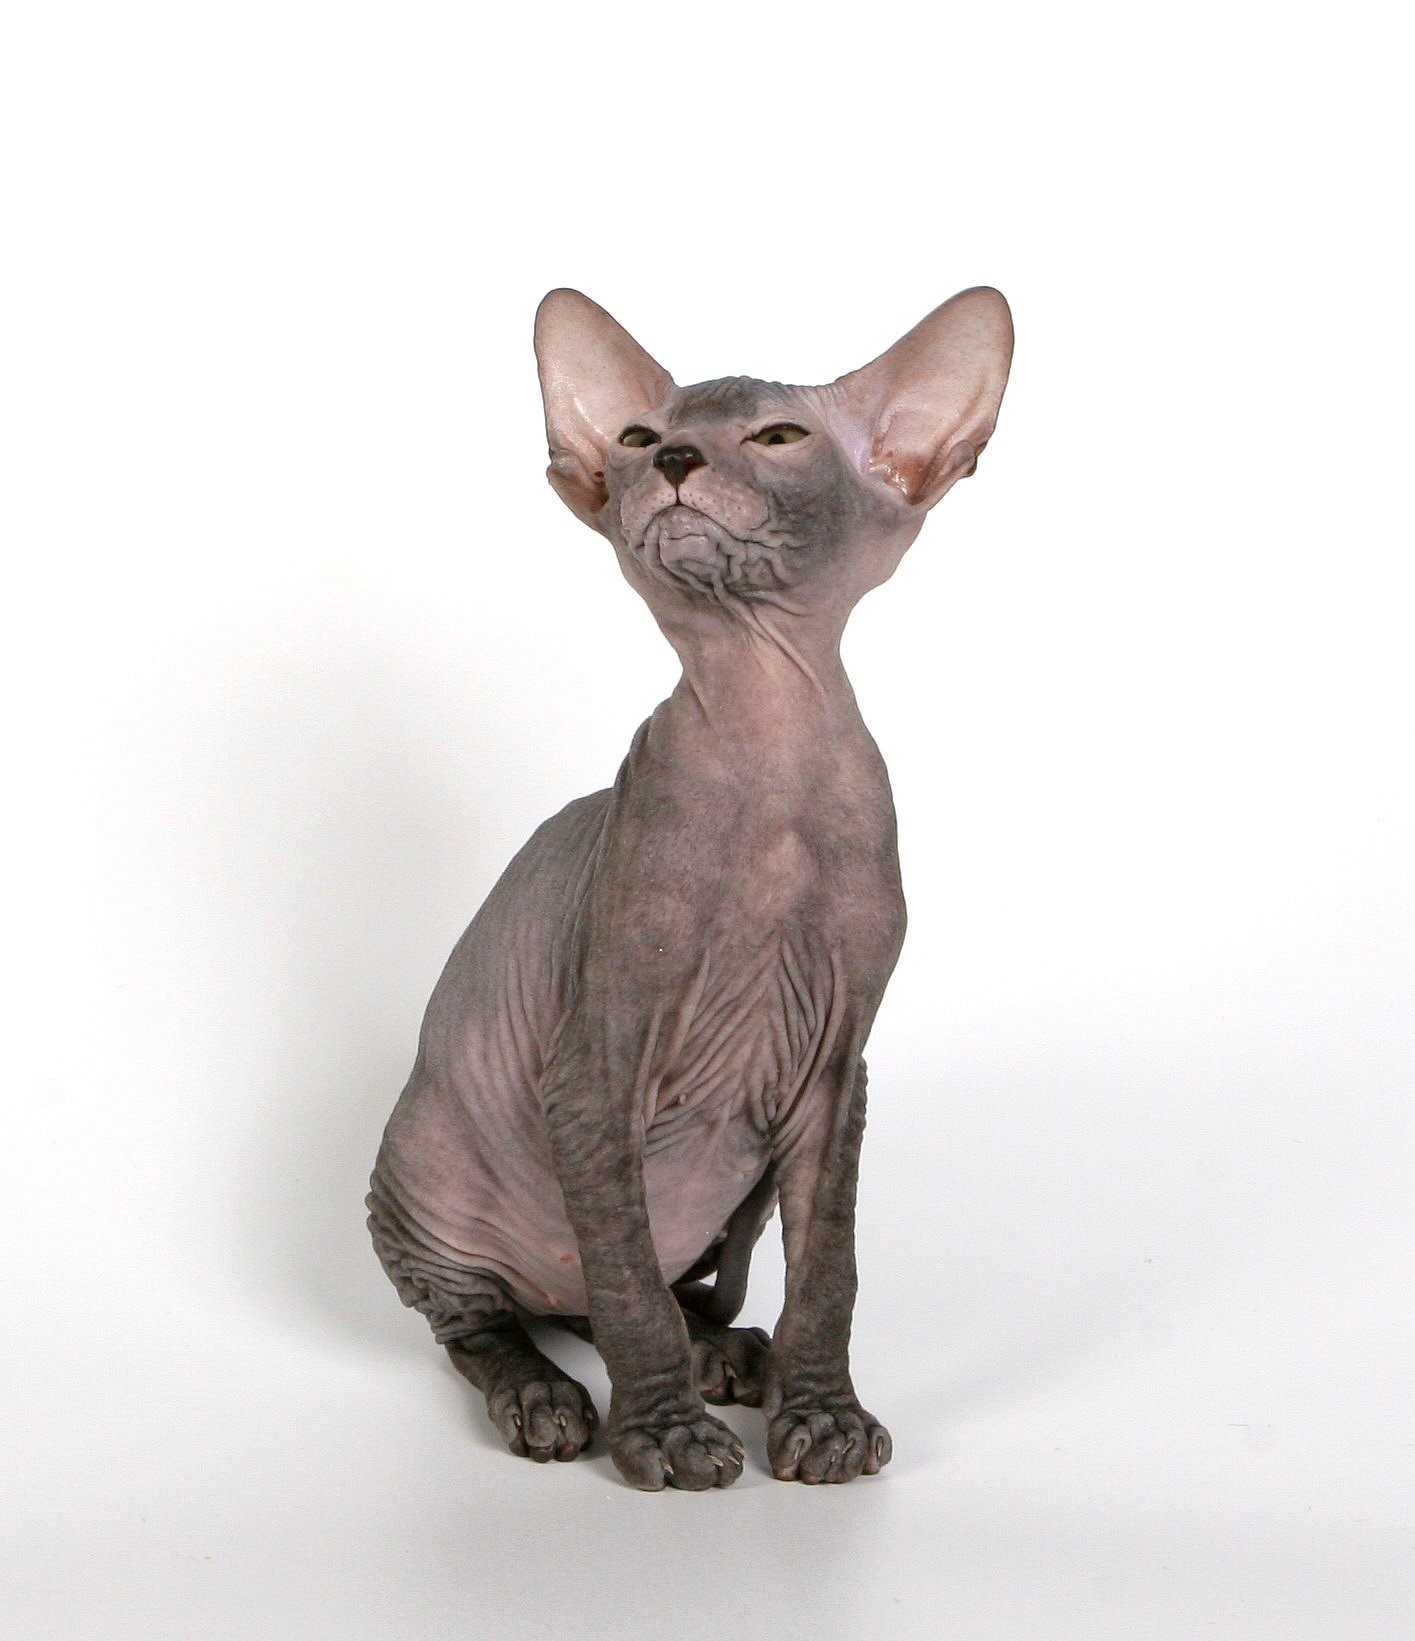 Рассмотрите фотографию лысой кошки породы петерболд и выполните задания